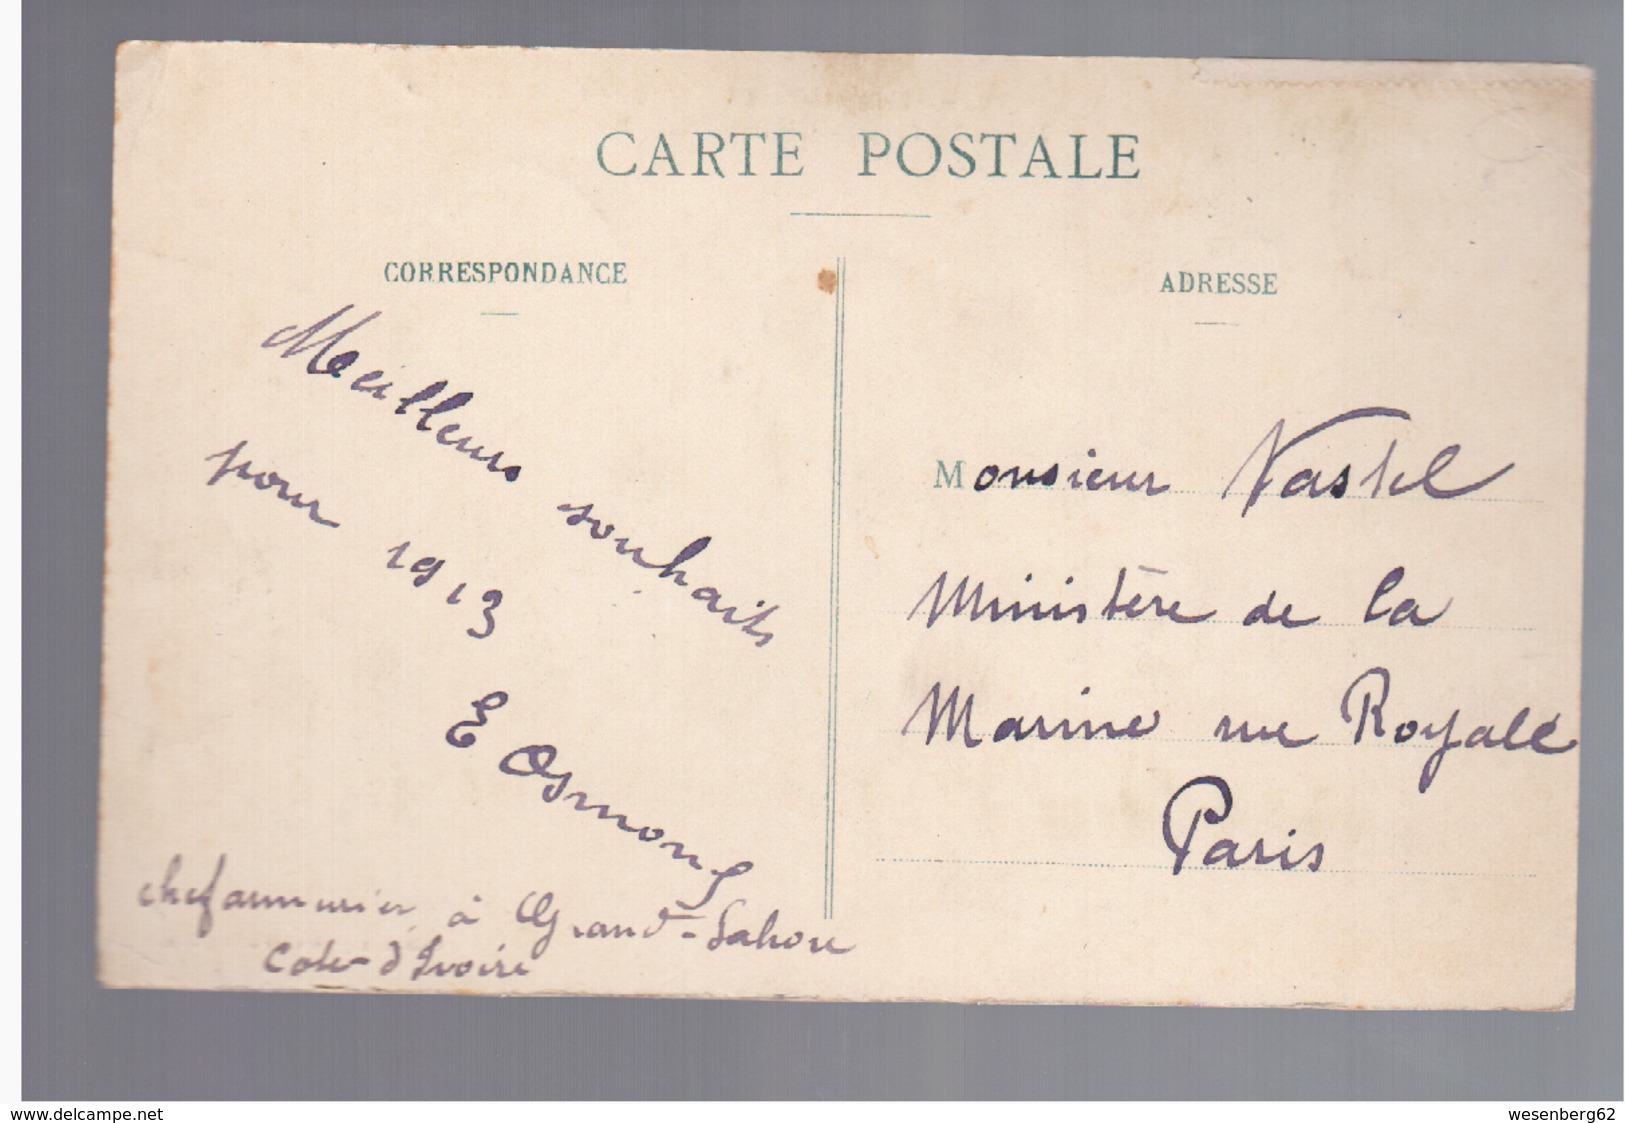 Cote D'Ivoire  Dans La Foret- Chantier D'abattage D'acajou, Fortier Ca 1910 OLD POSTCARD - Côte-d'Ivoire